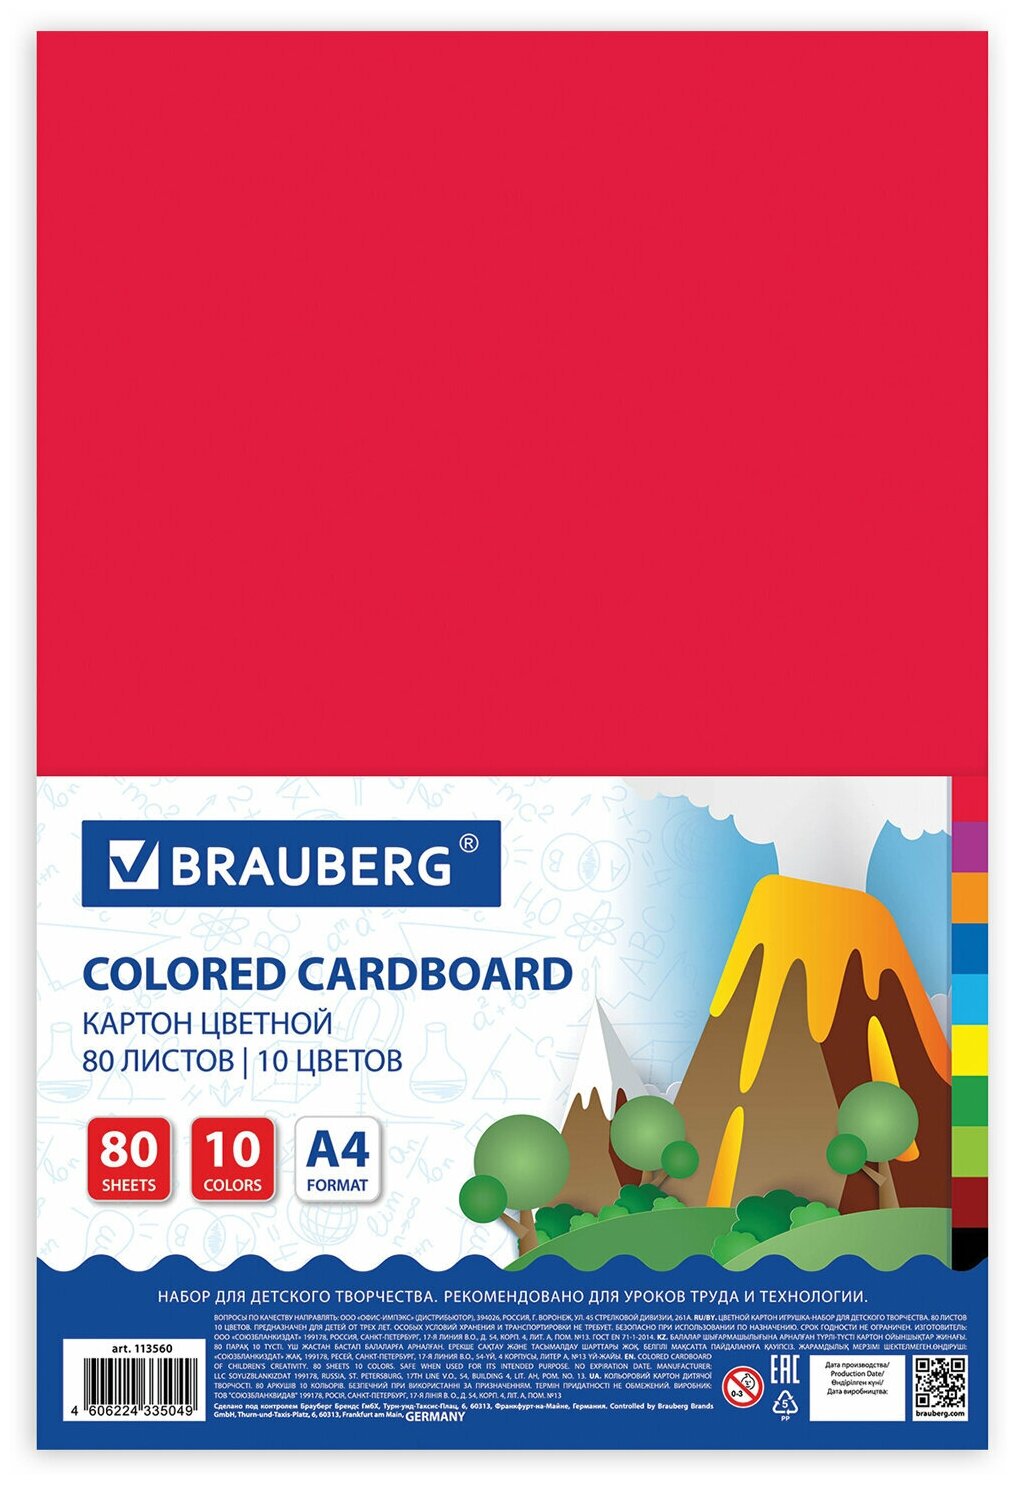 Картон цветной Brauberg а4 немелованный, 80 листов, 10 цветов, в пленке200х290 мм (113560)